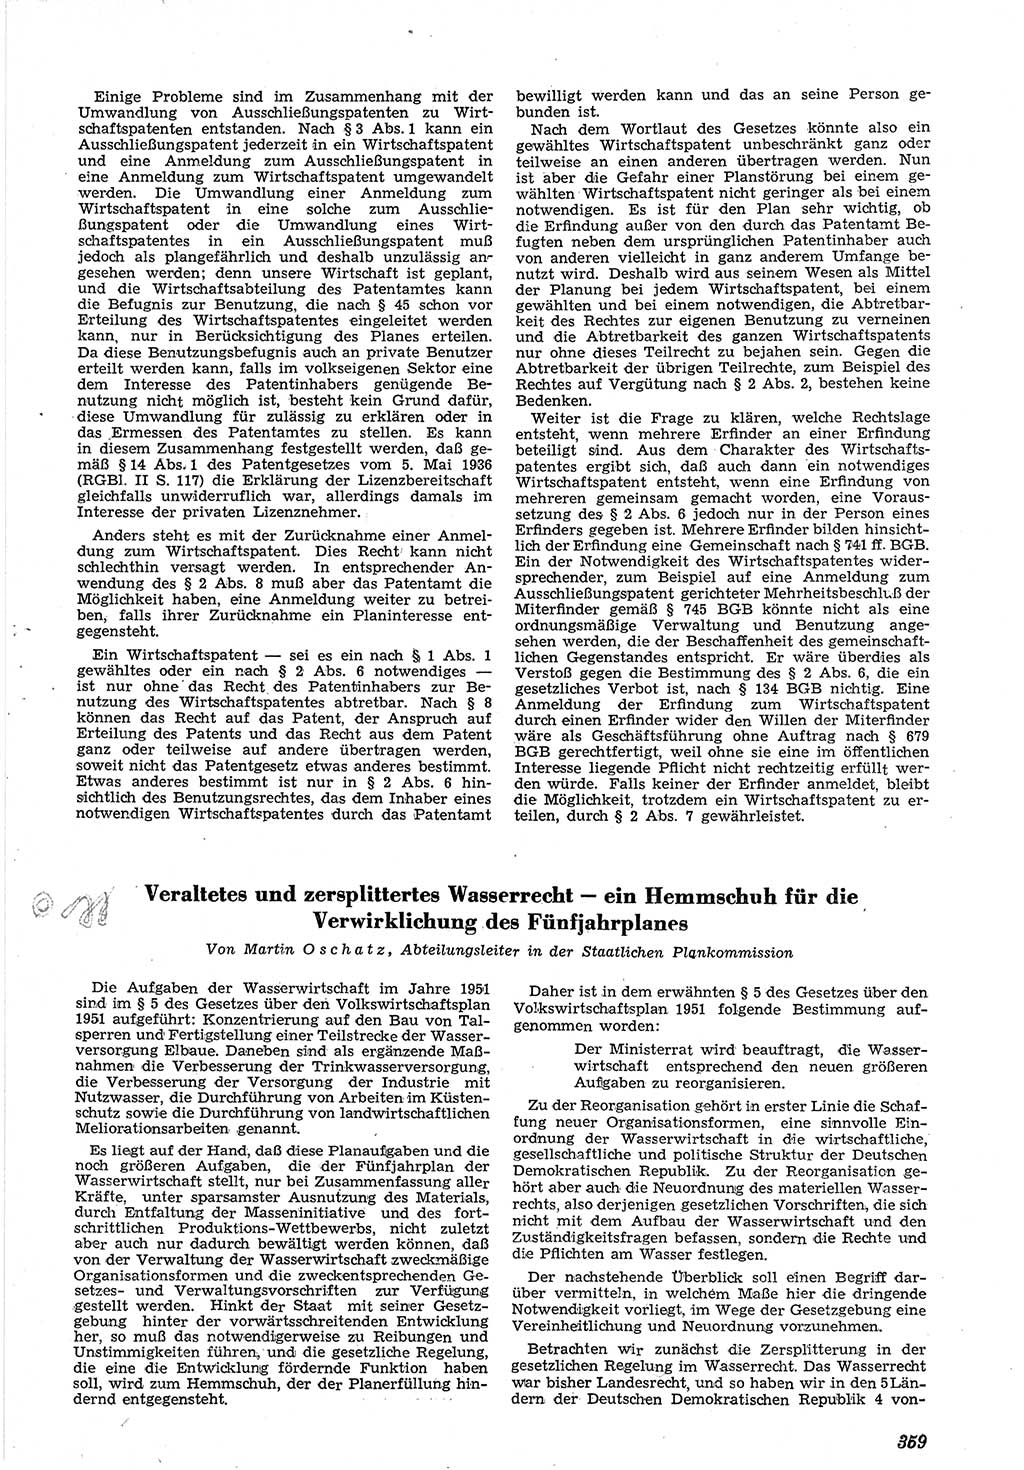 Neue Justiz (NJ), Zeitschrift für Recht und Rechtswissenschaft [Deutsche Demokratische Republik (DDR)], 5. Jahrgang 1951, Seite 359 (NJ DDR 1951, S. 359)